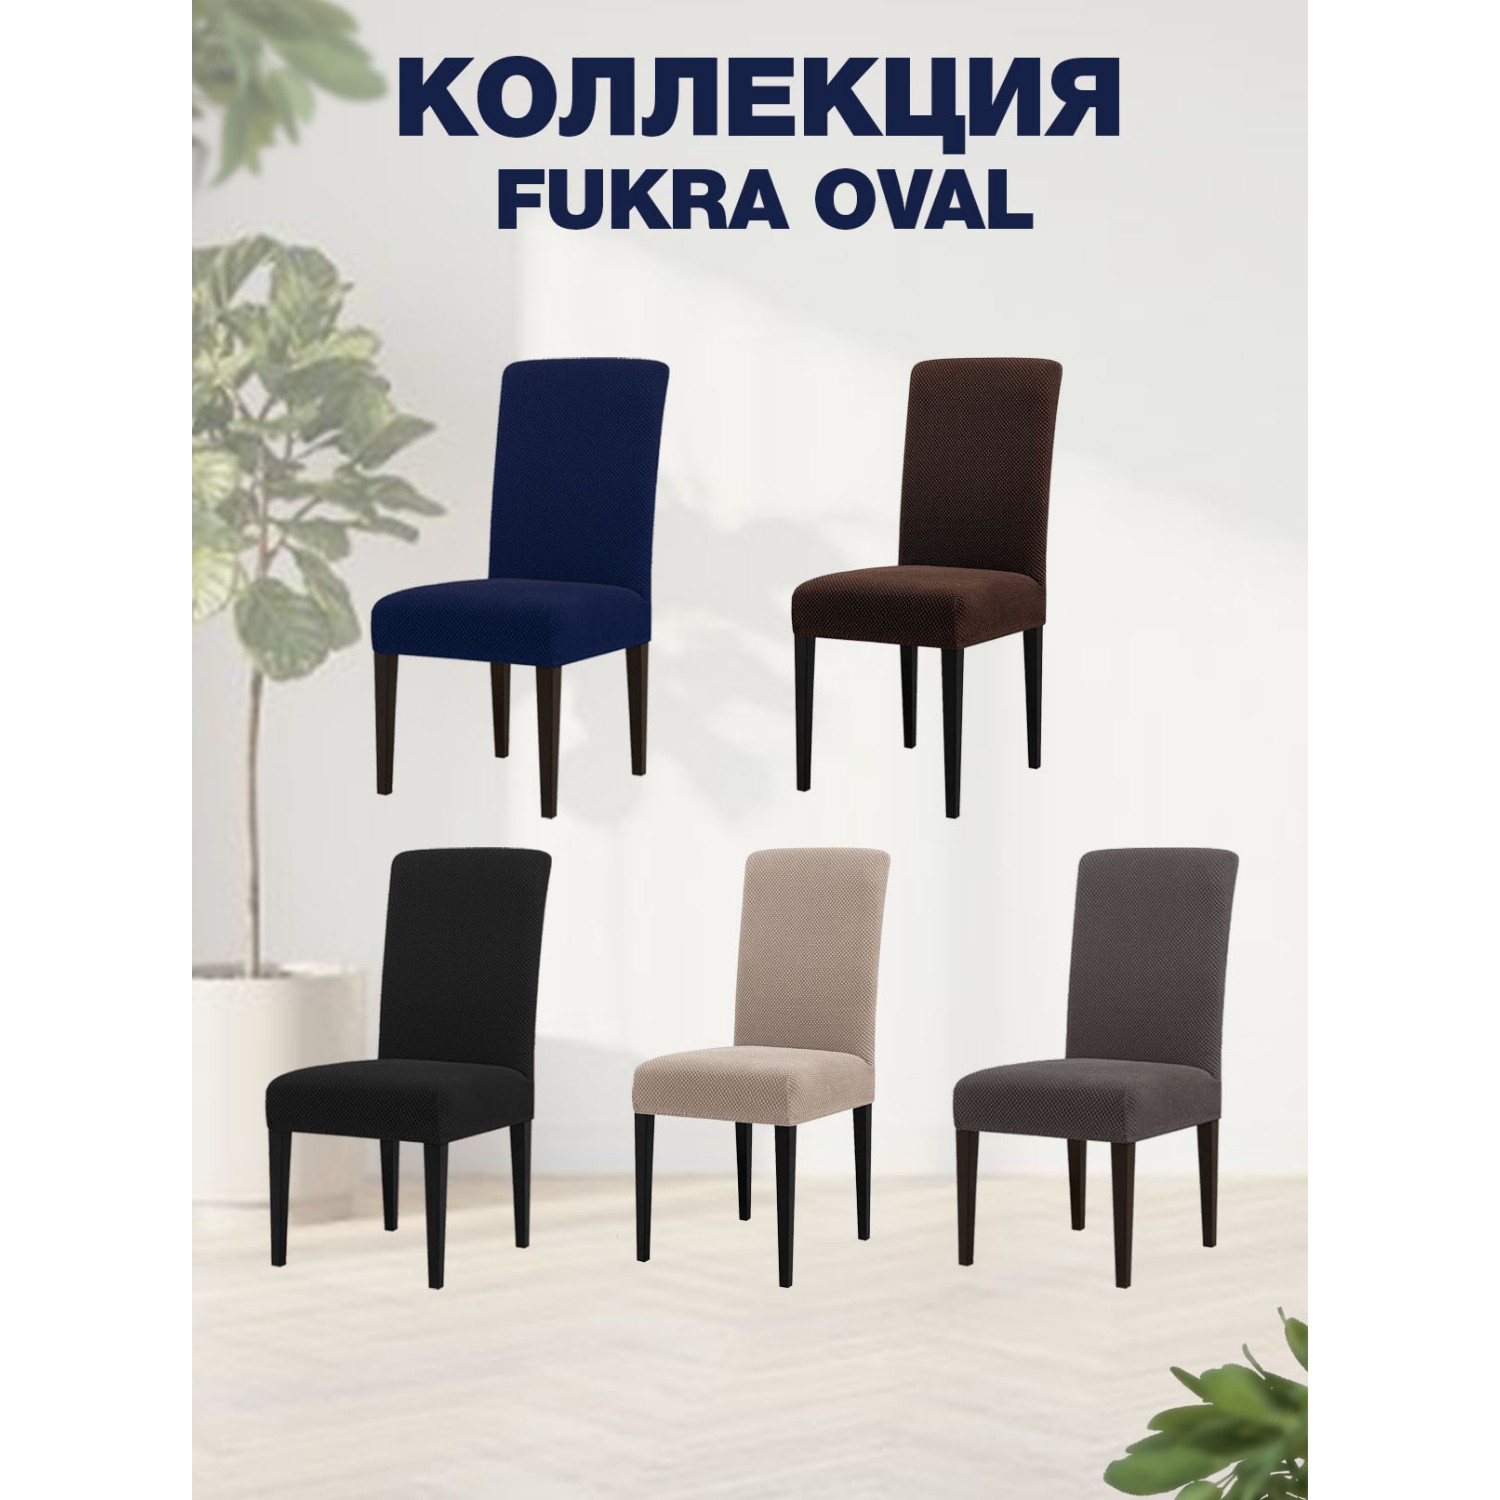 Чехол на стул LuxAlto Коллекция Fukra oval коричневый - фото 3